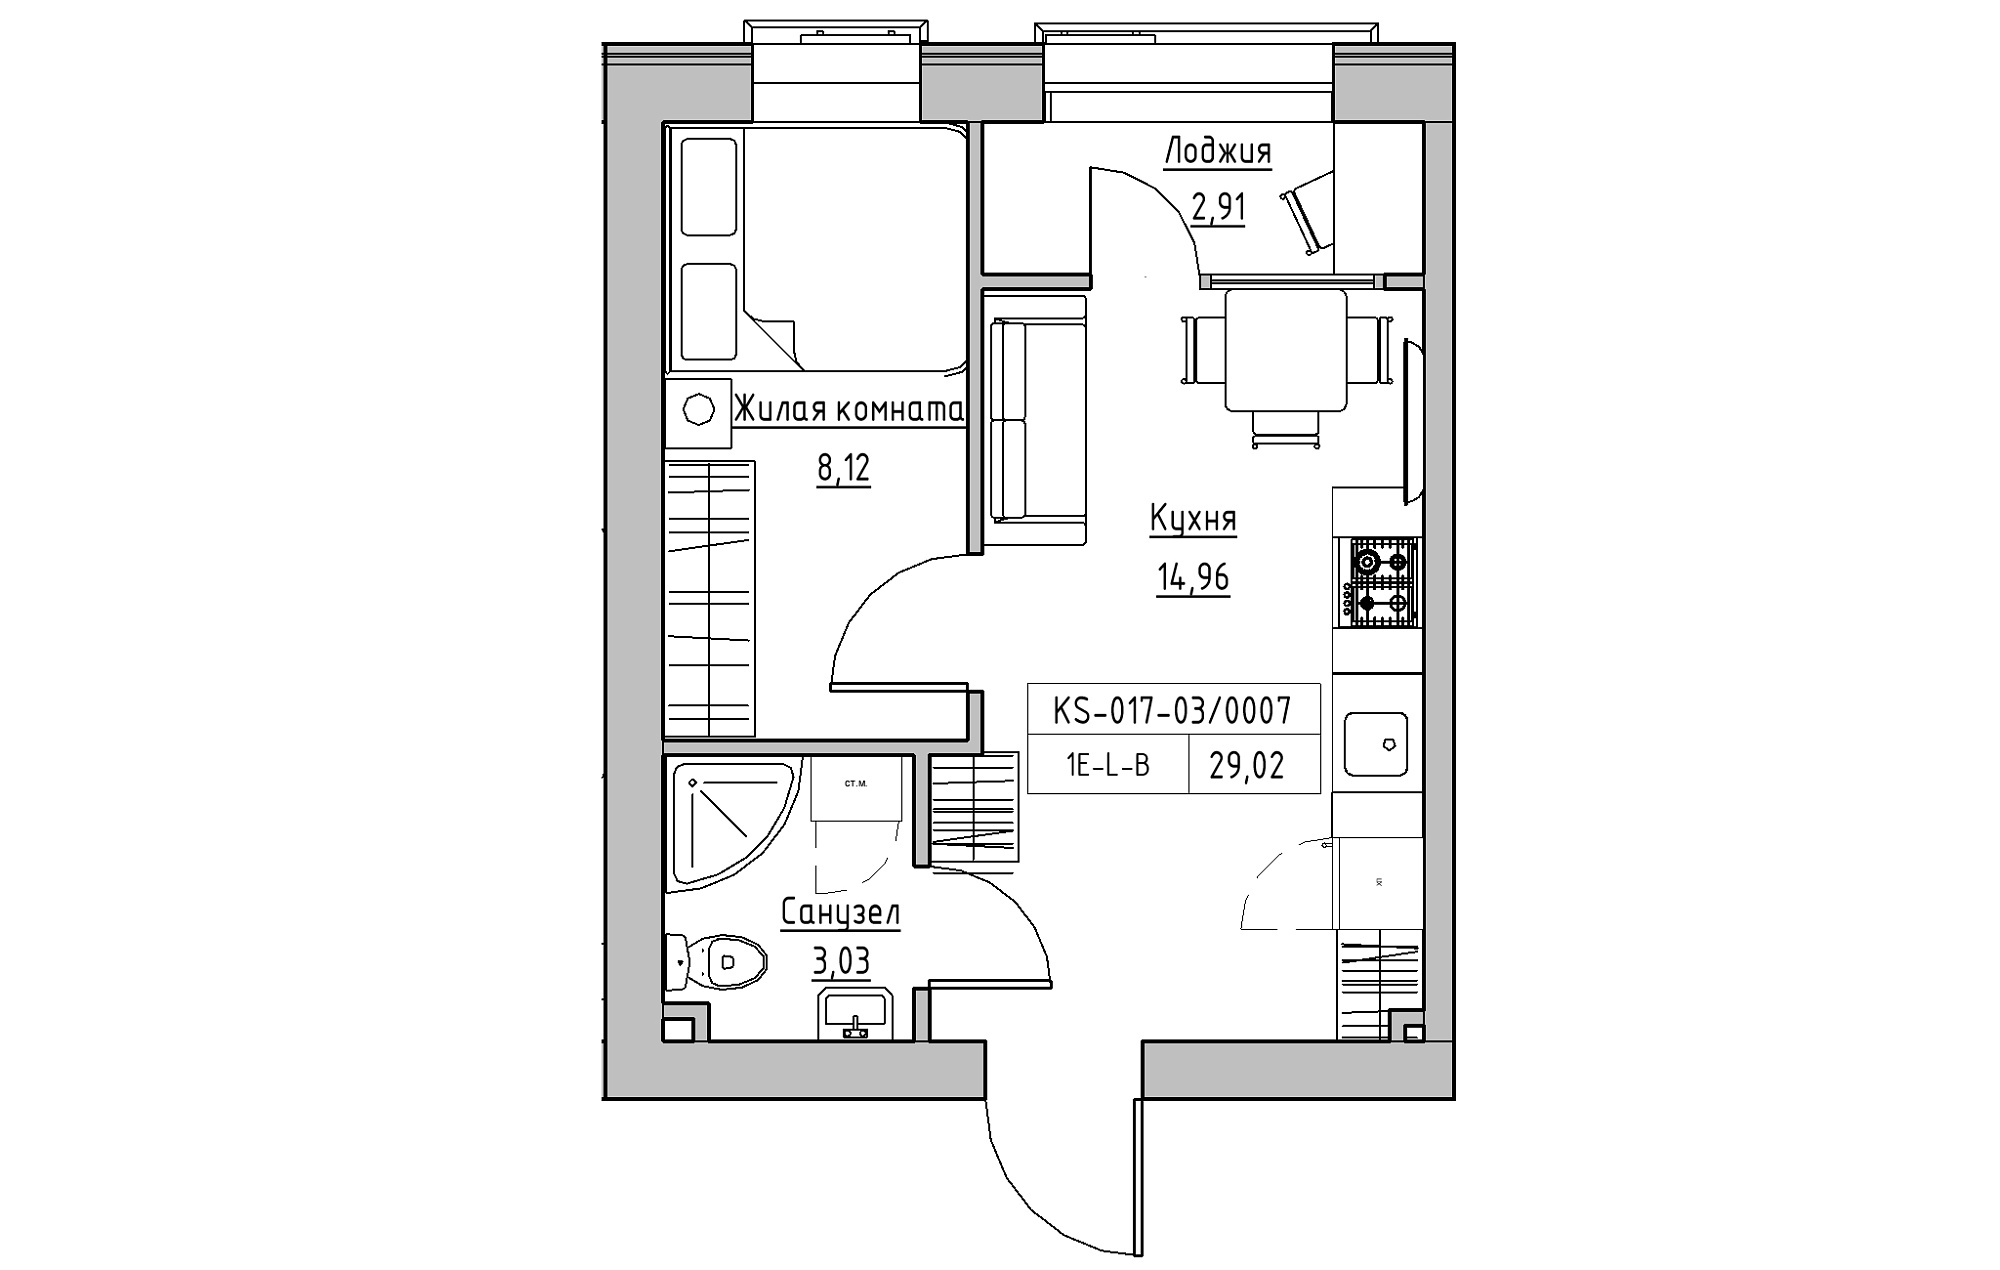 Планировка 1-к квартира площей 29.02м2, KS-017-03/0007.